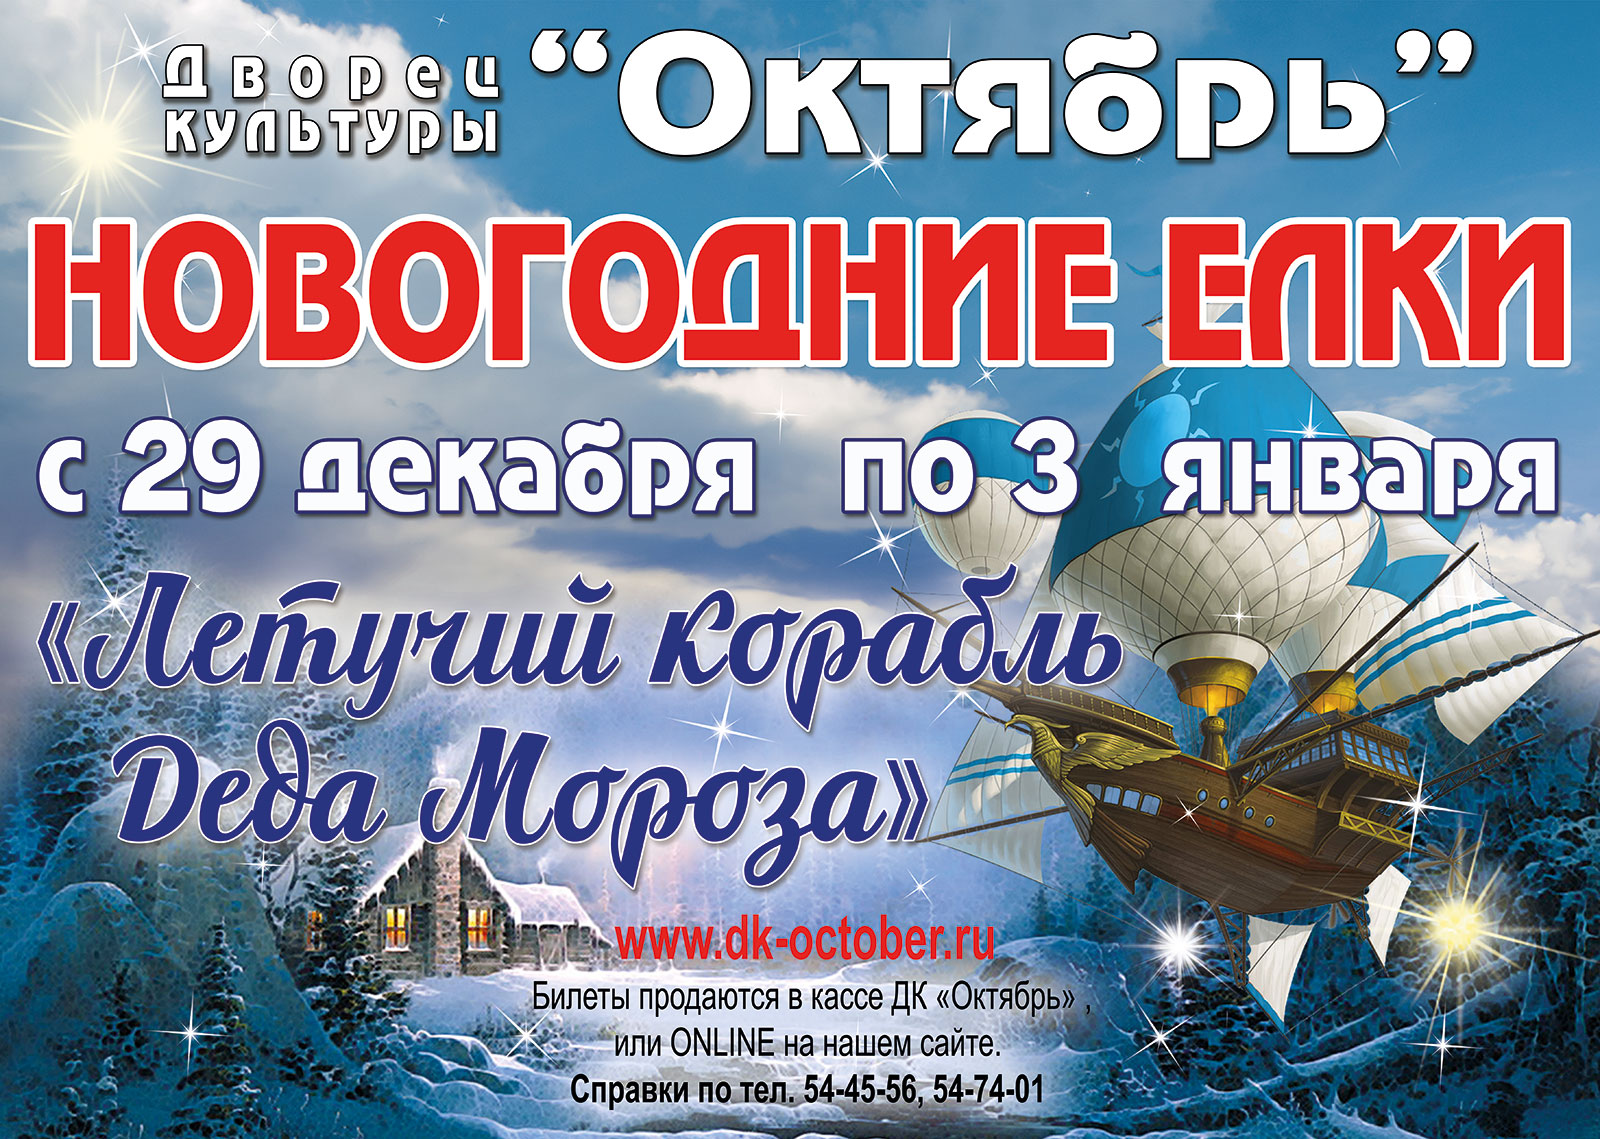 Летучий корабль новогоднее представление. Новый год в октябре. Представления для детей в Подольске.